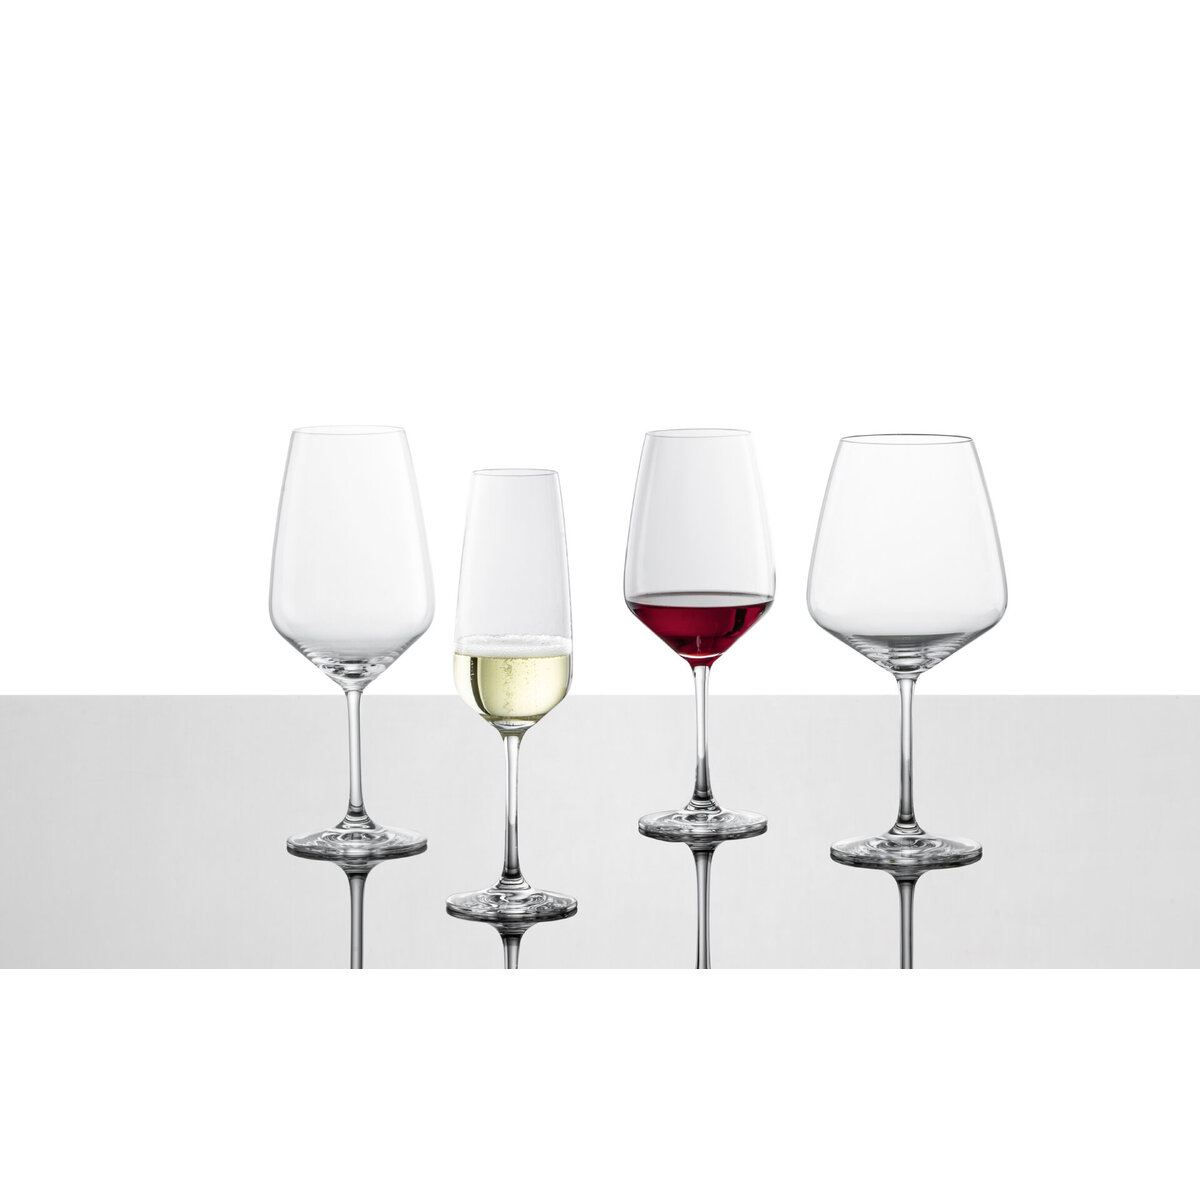 Glasserie "Taste" Rotweinglas 495ml (1)